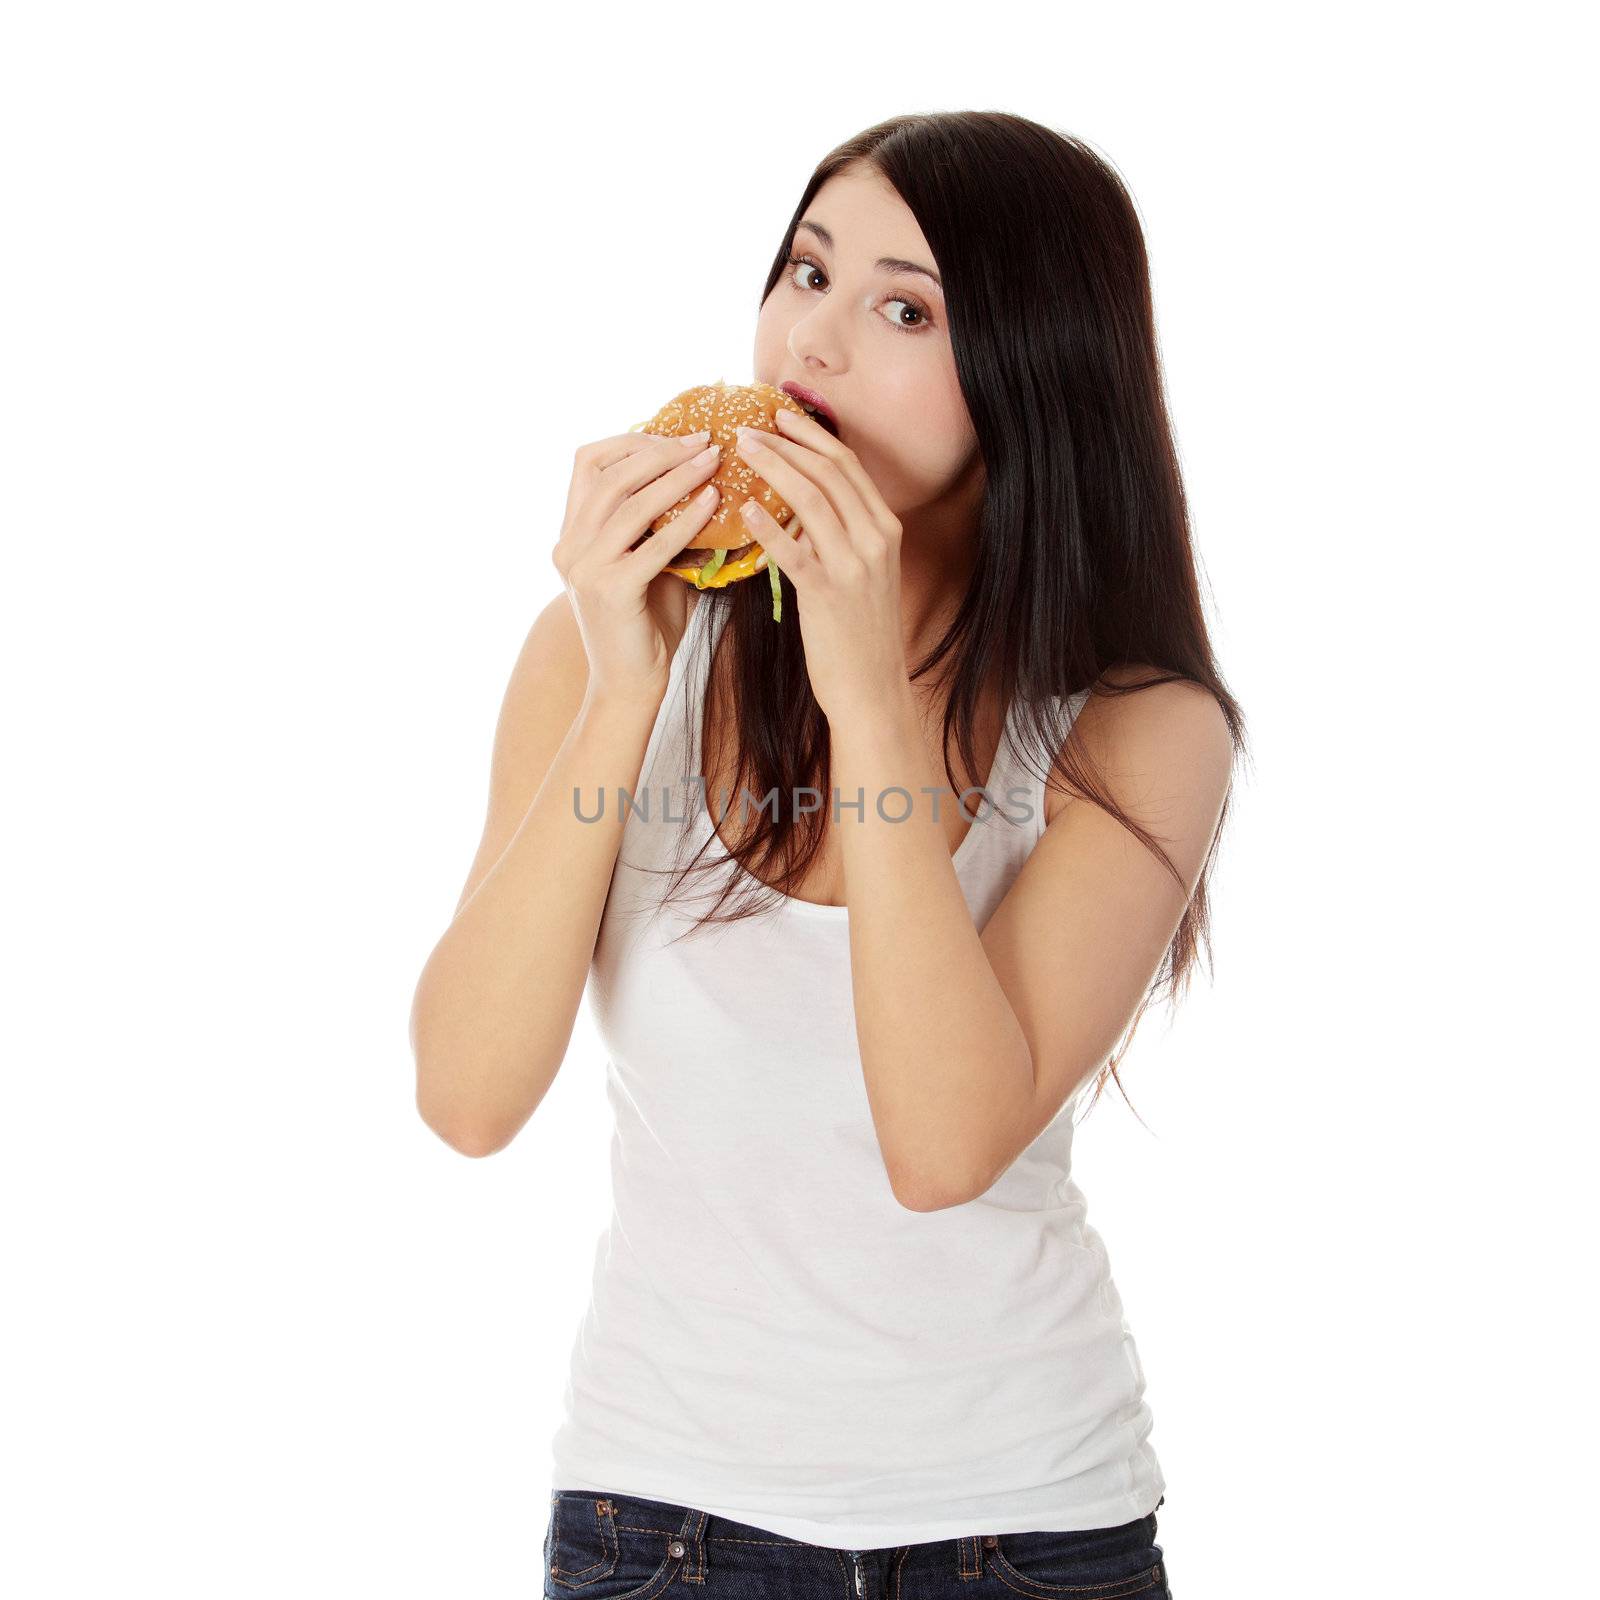 Woman eating hamburger by BDS